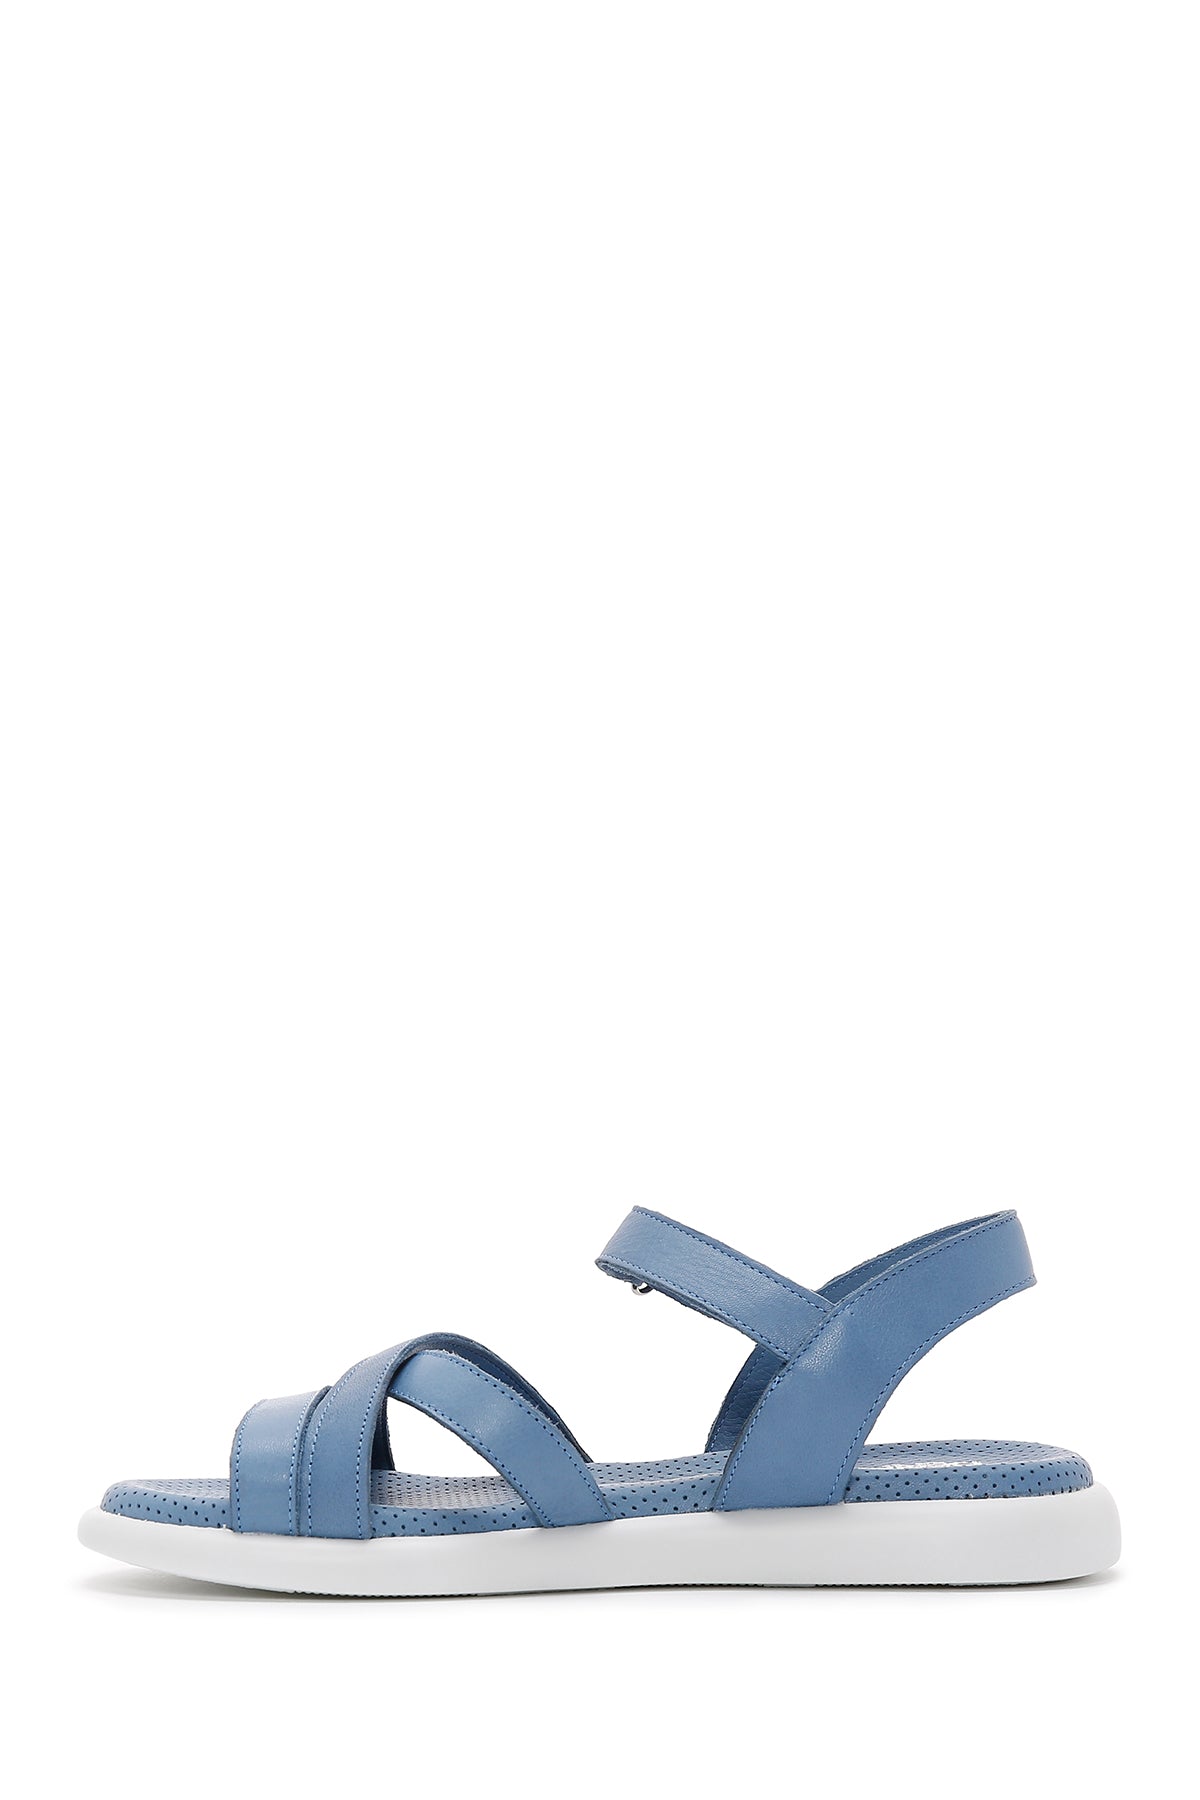 Kadın Mavi Bilekten Bantlı Deri Comfort Sandalet